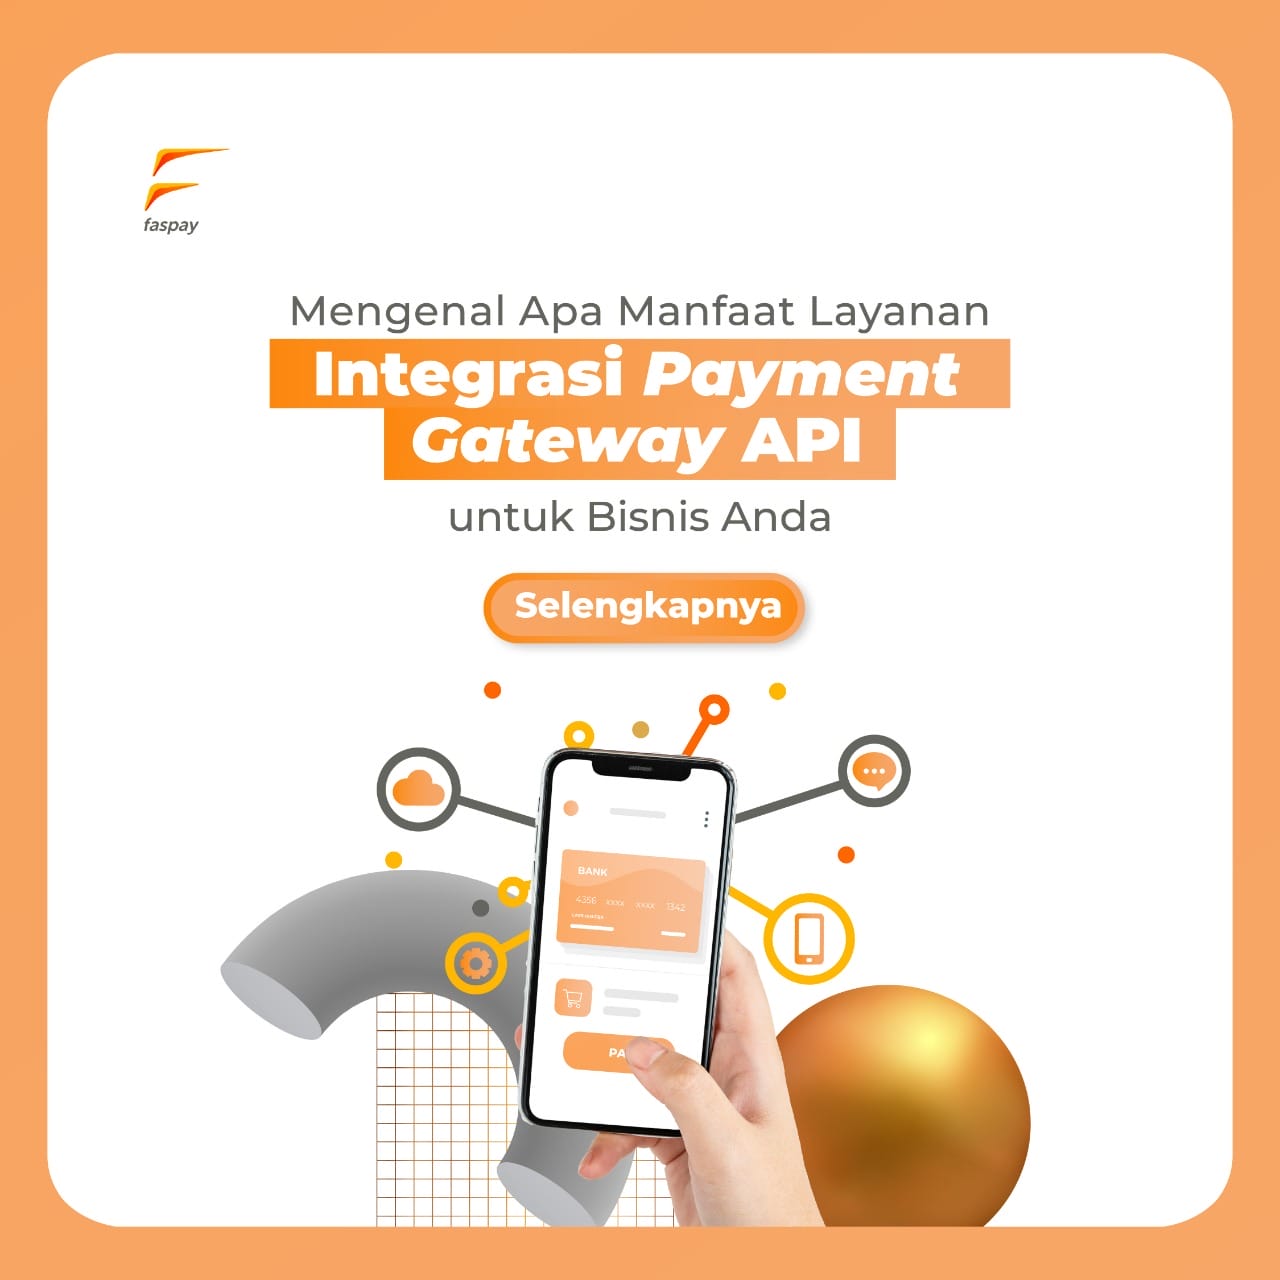 Mengenal Manfaat Layanan Integrasi Payment Gateway API untuk Bisnis